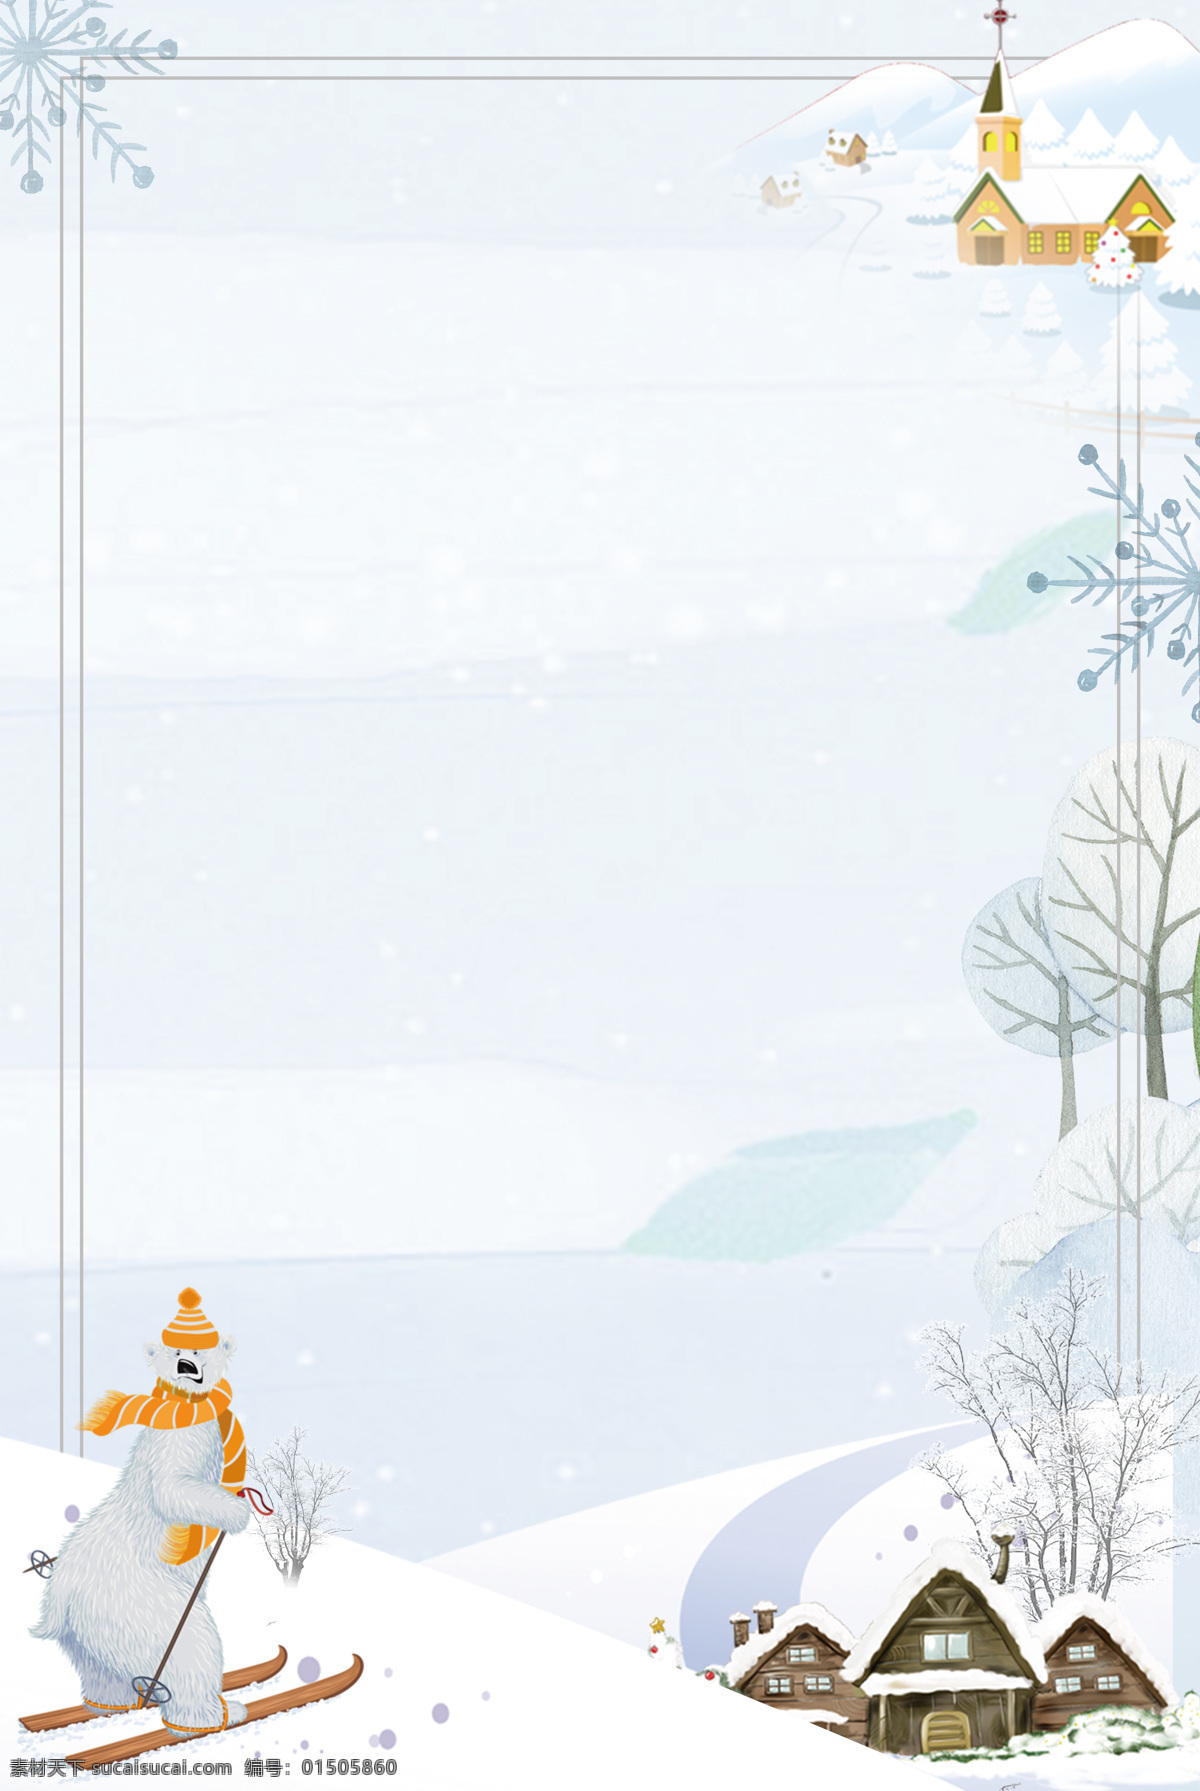 卡通 白熊 滑雪 背景 小清新 唯美 边框 海报 广告